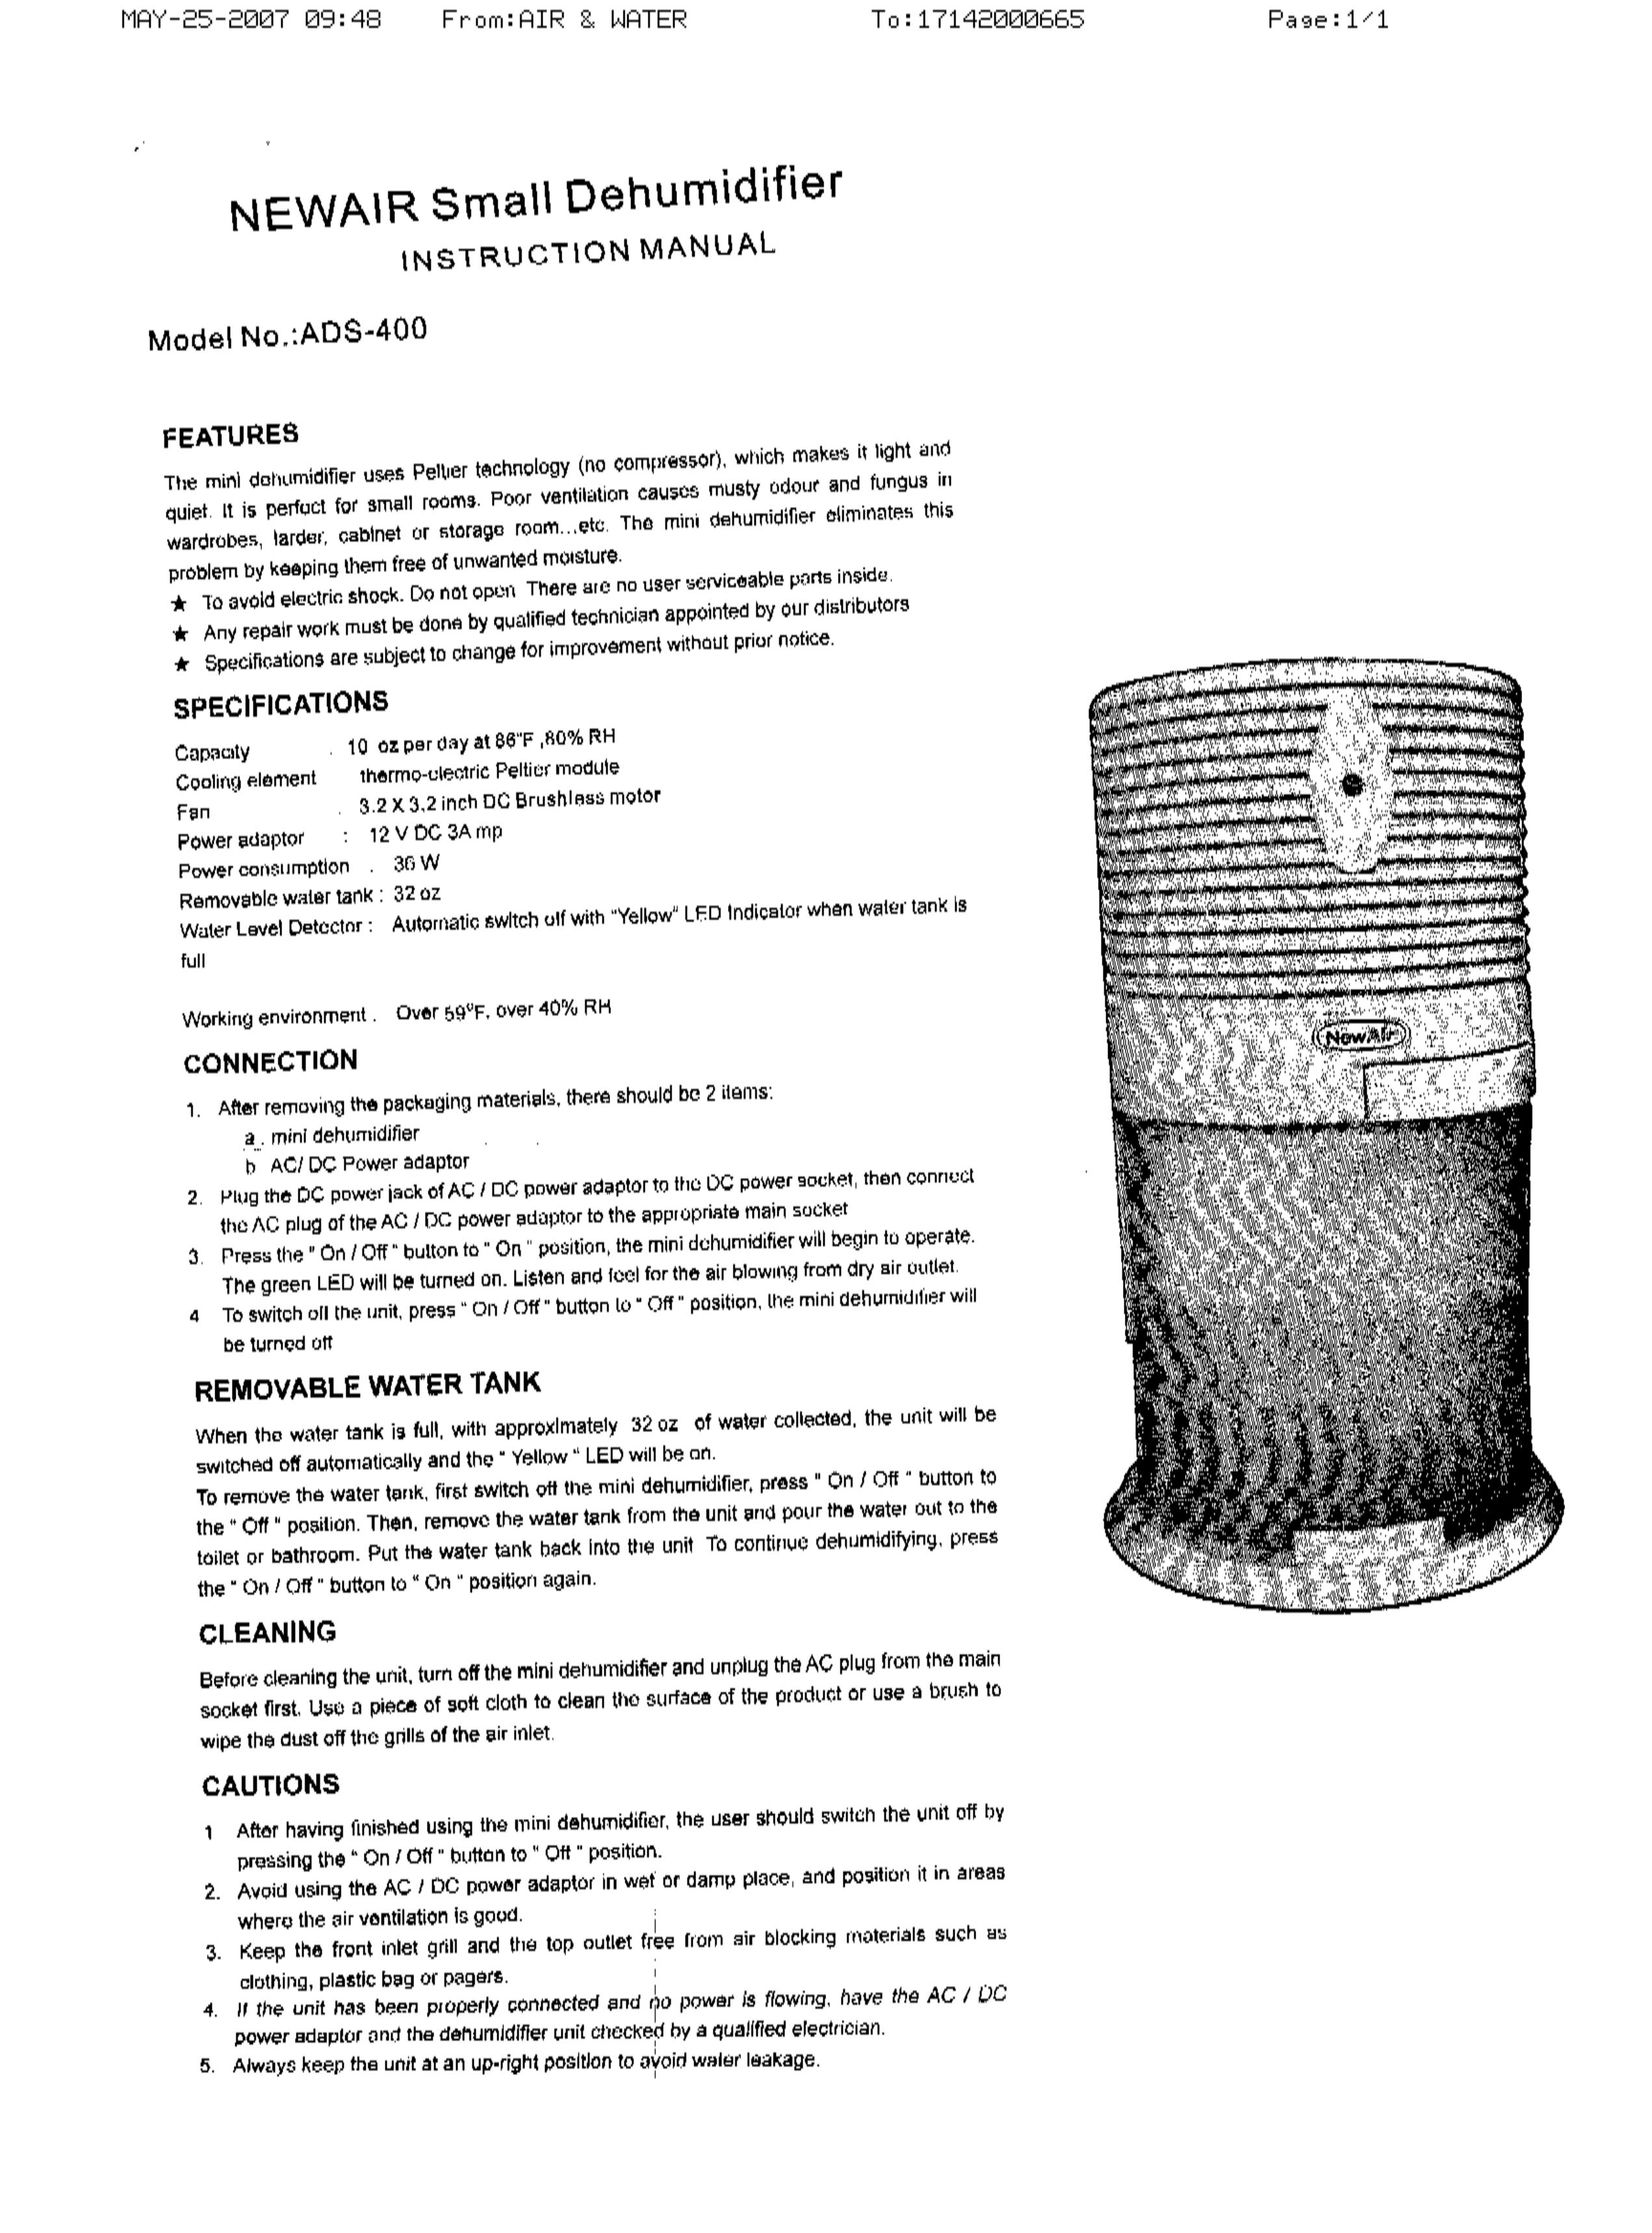 NewAir ADS-400 Dehumidifier User Manual